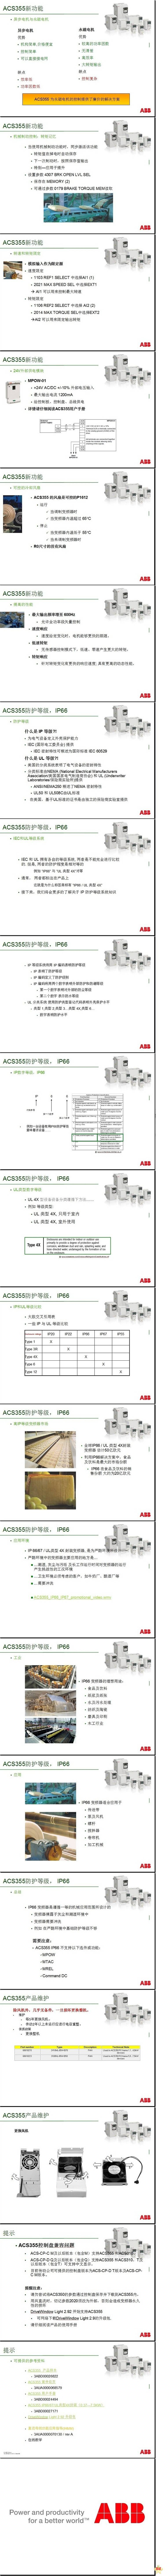 ABB 变频器 机械传动 三相 380V ACS355-03E-04A1-4+B063 IP66 防护等级 变频器,机械传动,微型传动,ACS355,ABB